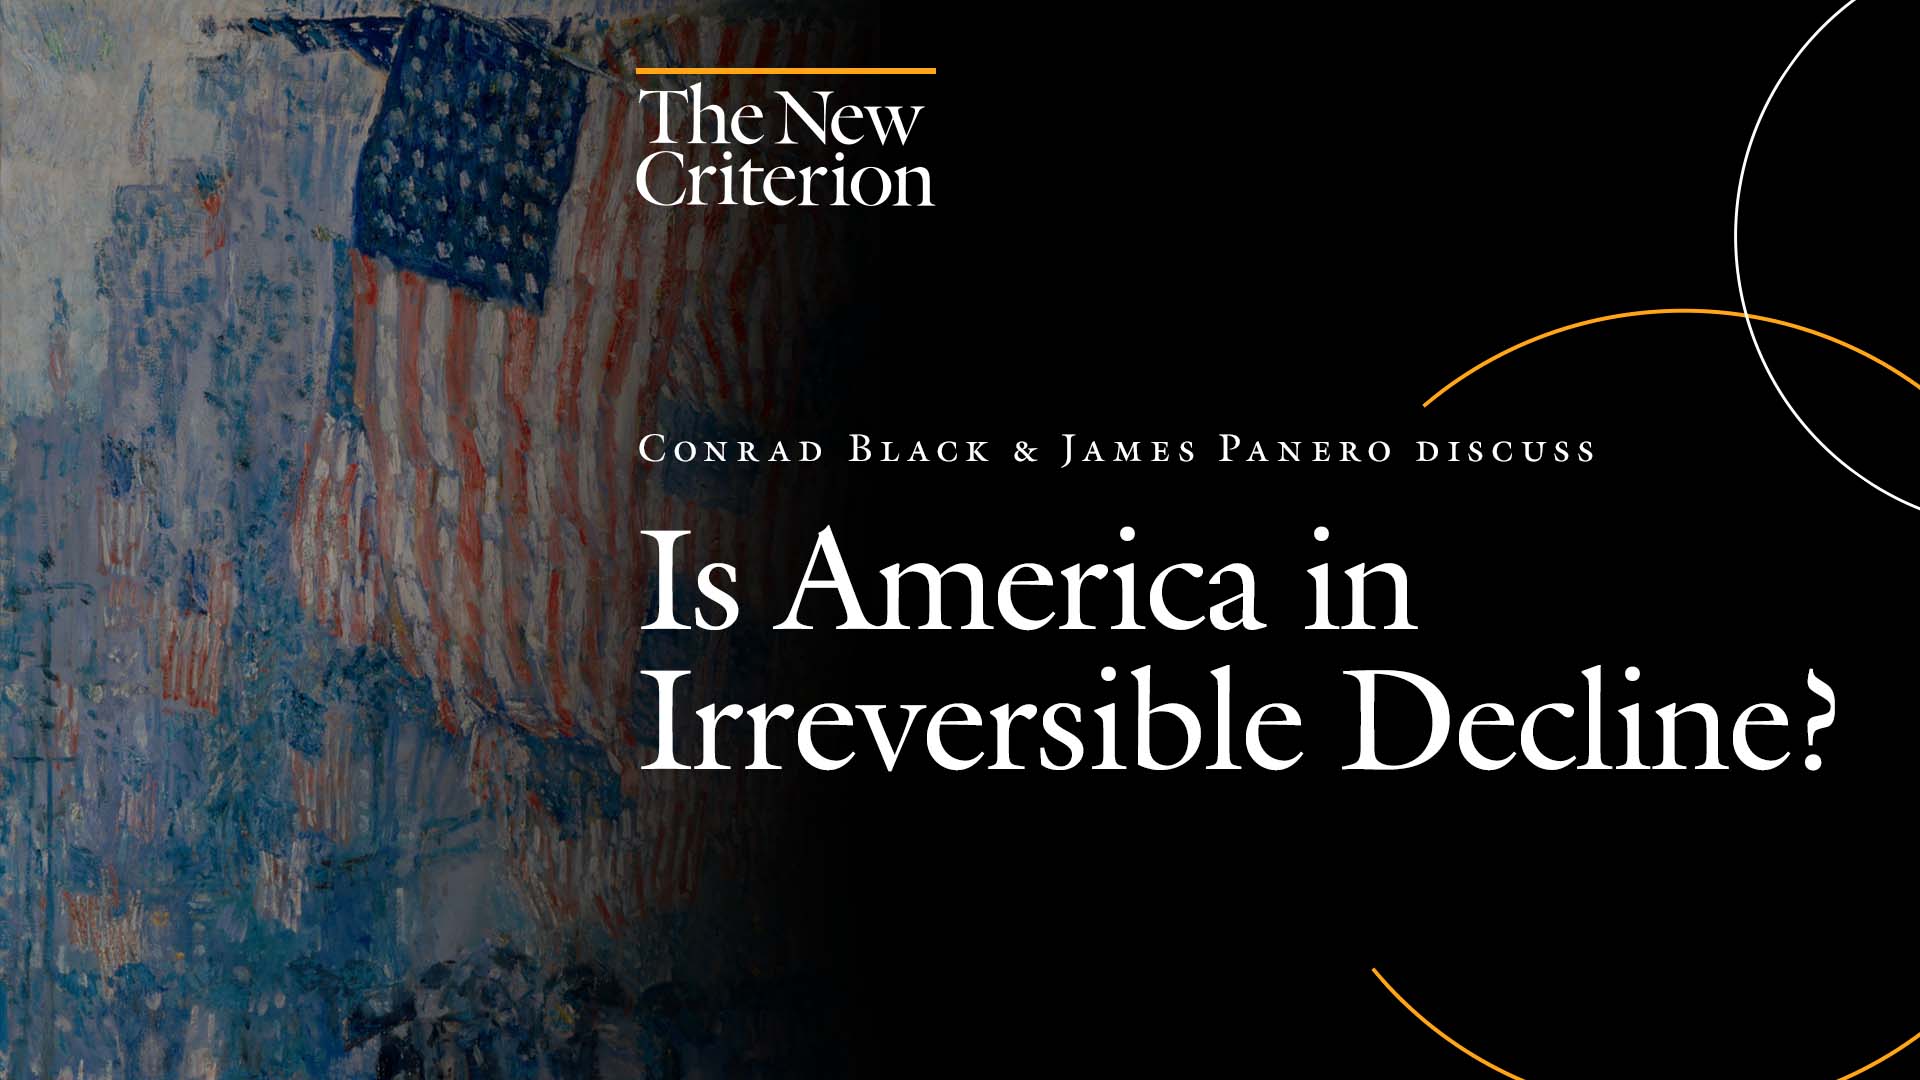 Conrad Black & James Panero discuss “Is America in Irreversible Decline?”